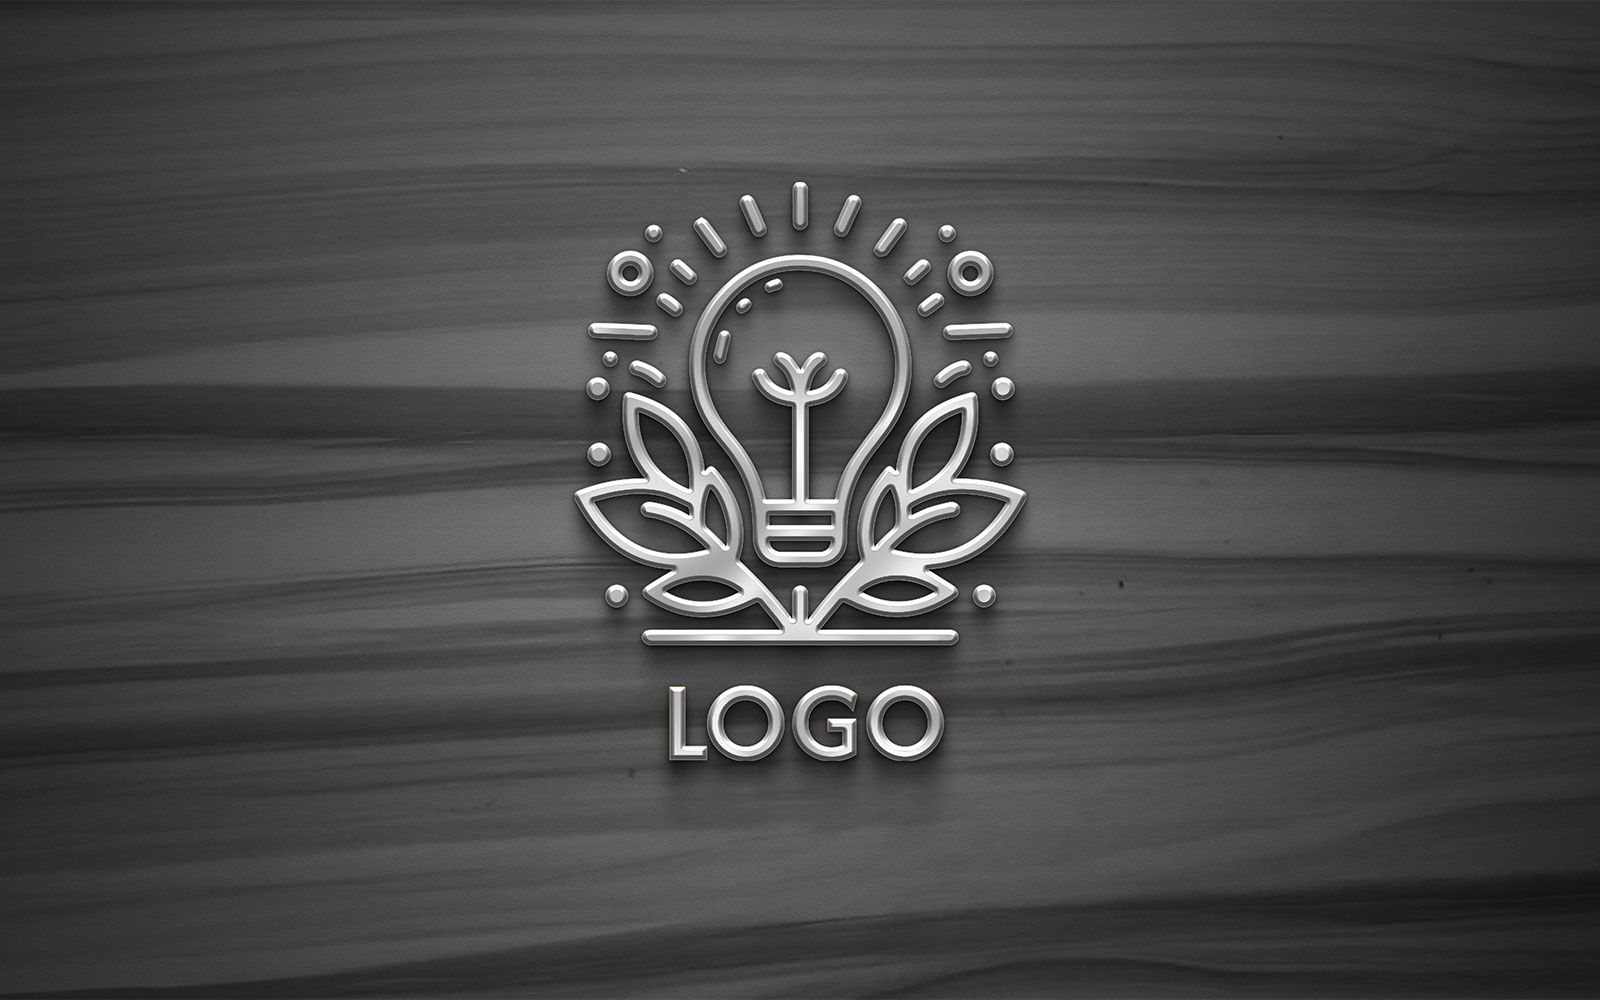 Graphic designer Creative design Logo product